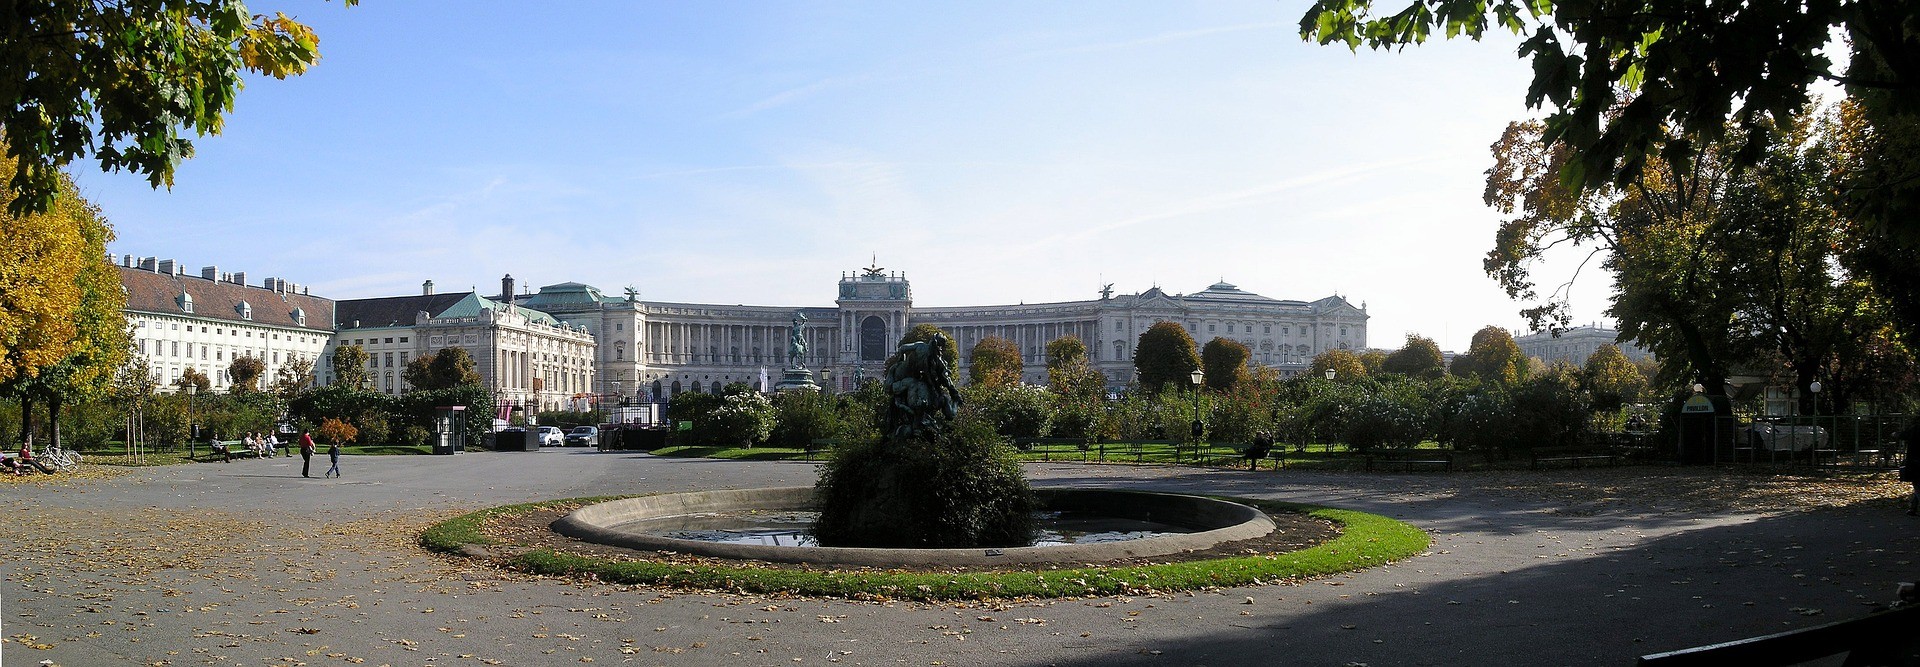 Hofburg Palace, Vienna: All year